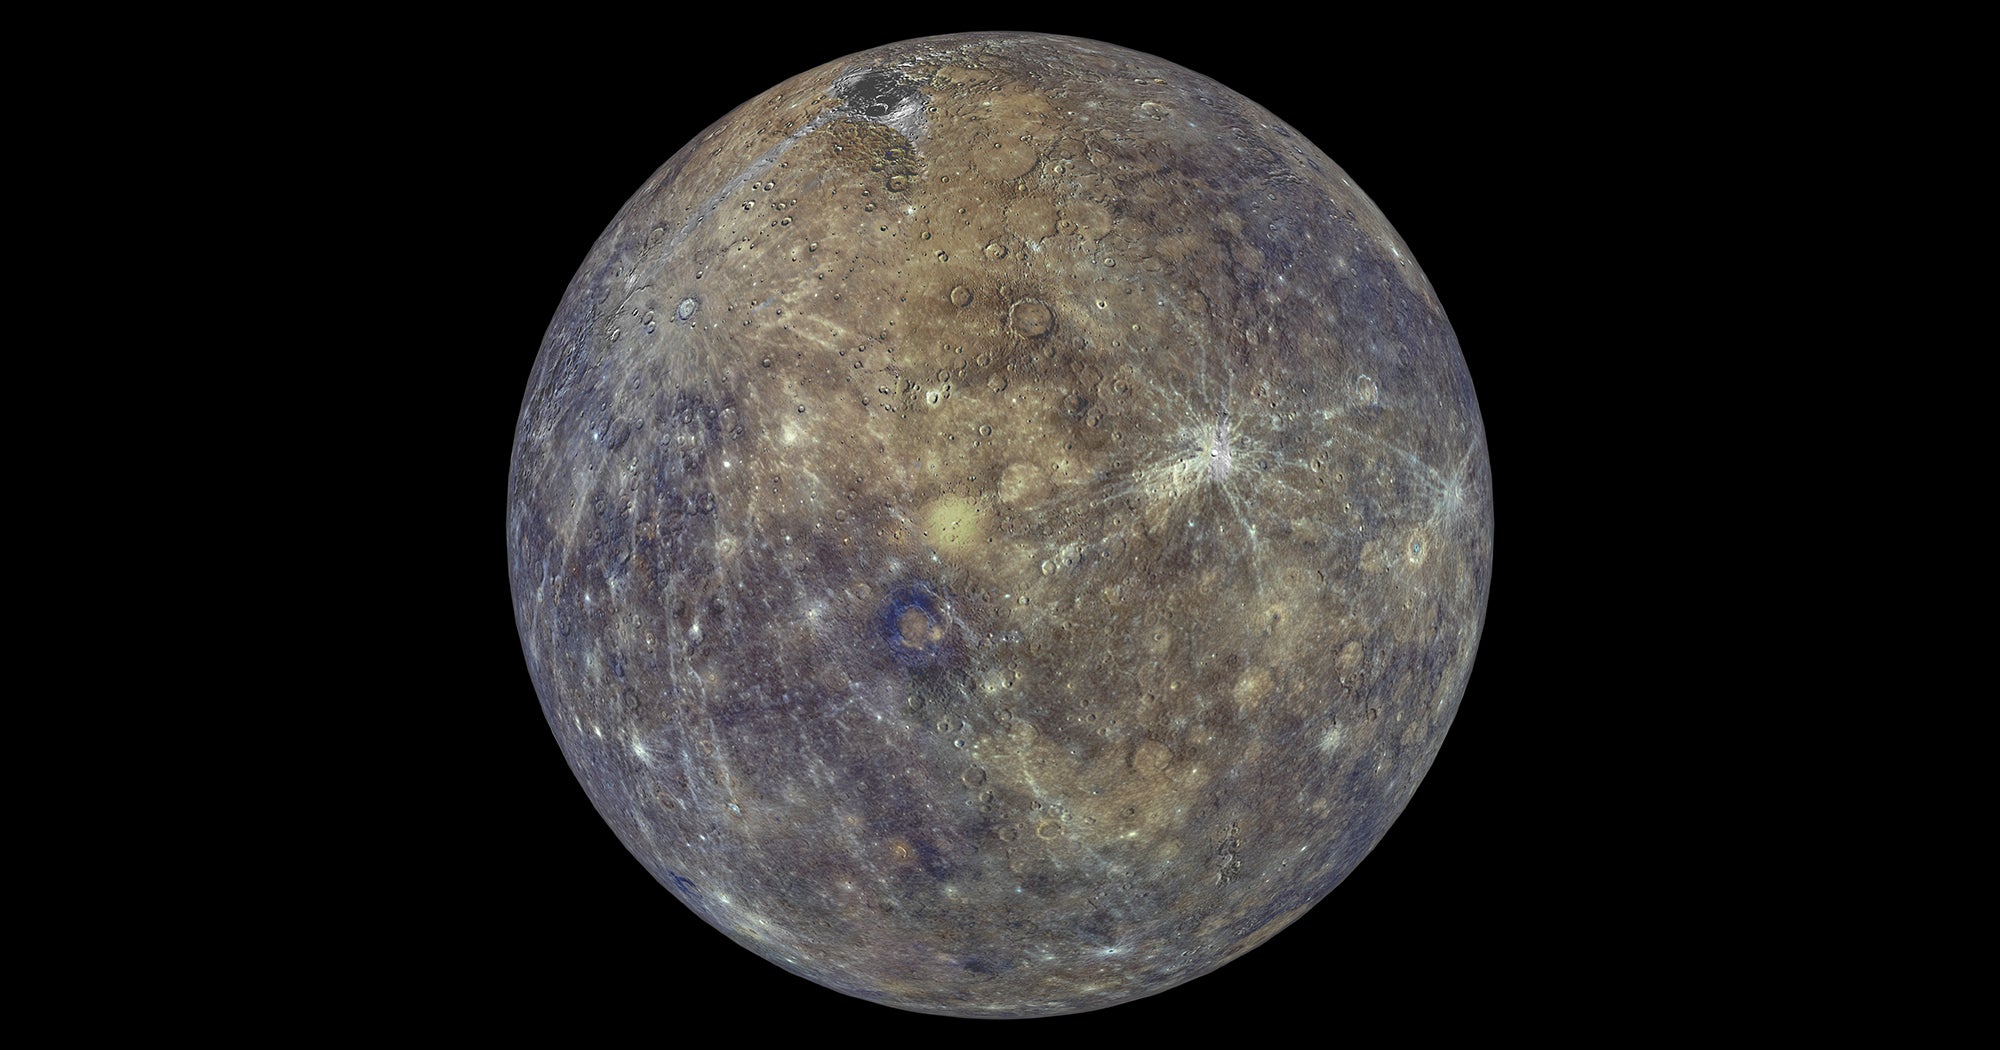 when was the last mercury retrograde 2020